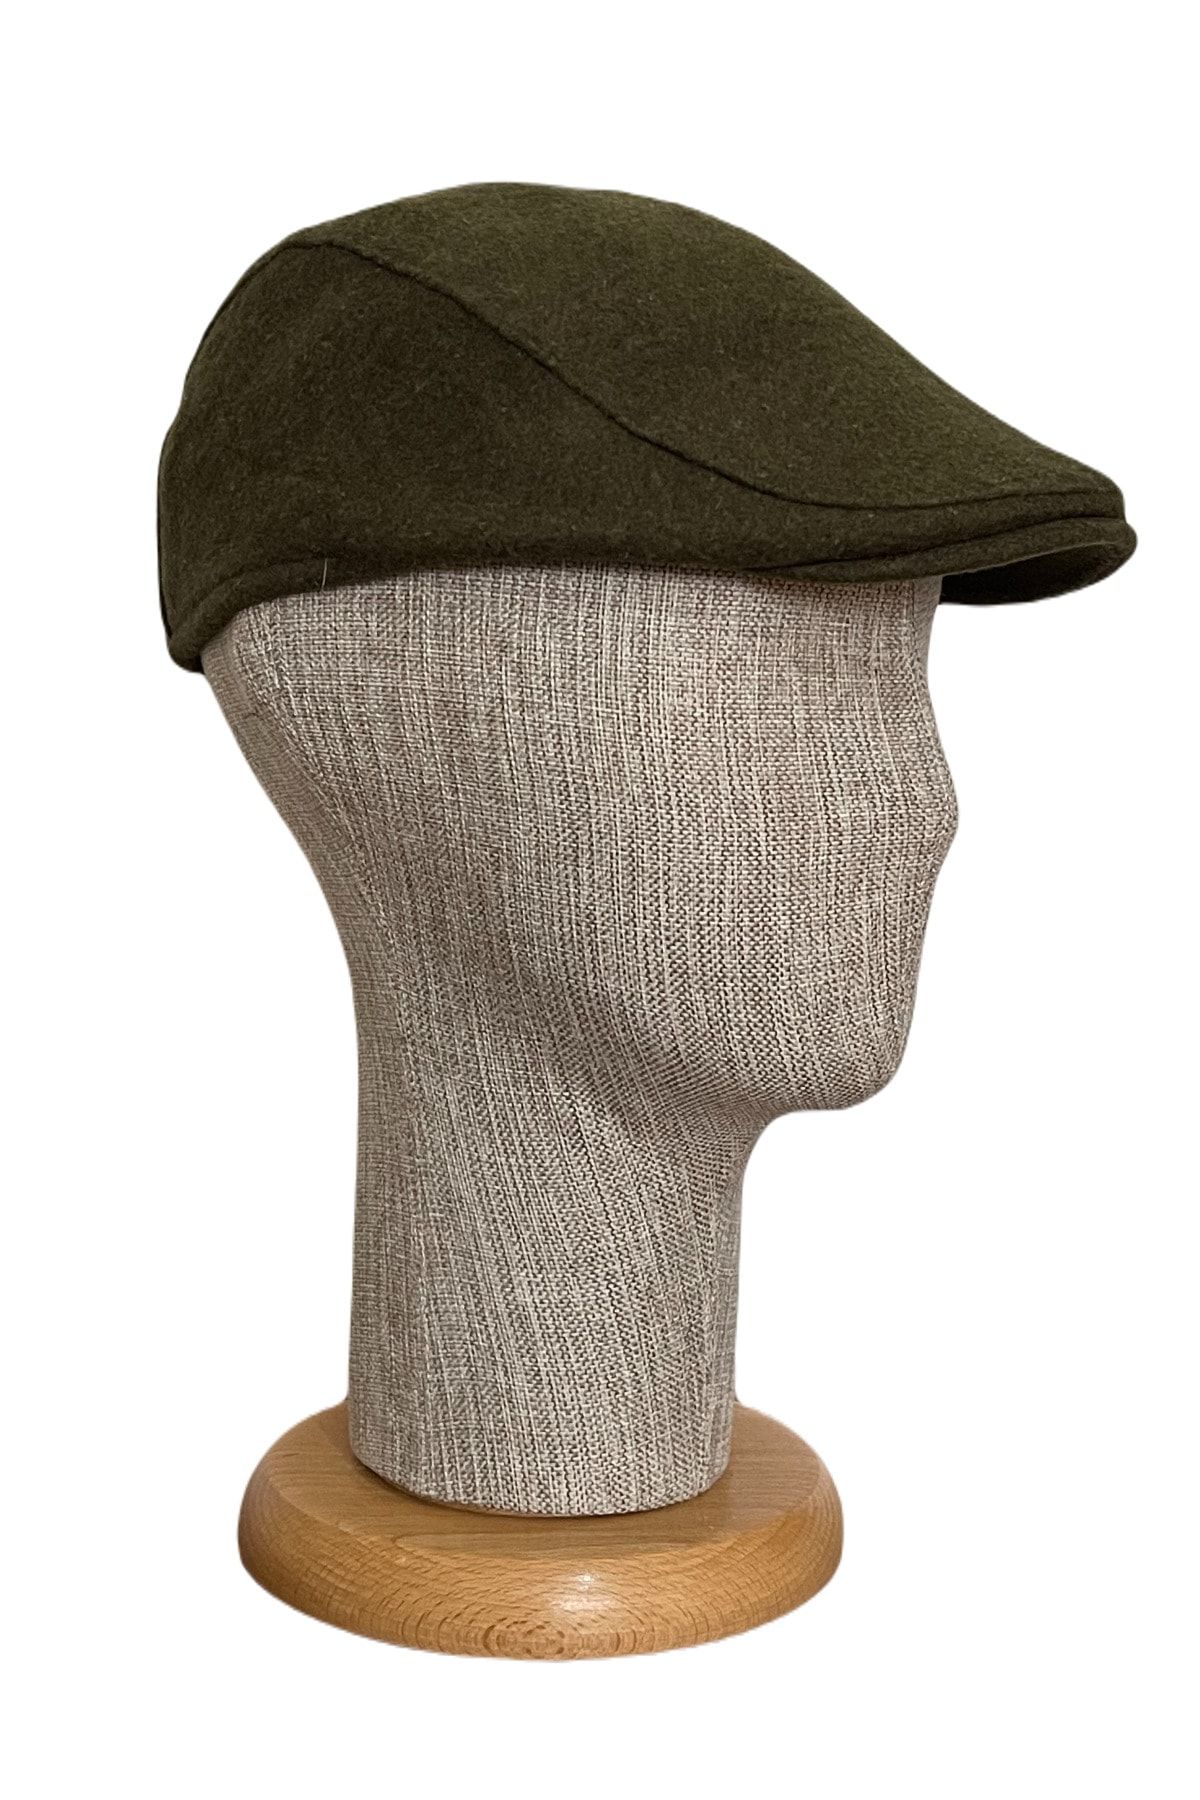 Rupen Kraft Italyan Kesim Kışlık Kaşe Kumaş Kasket Şapka